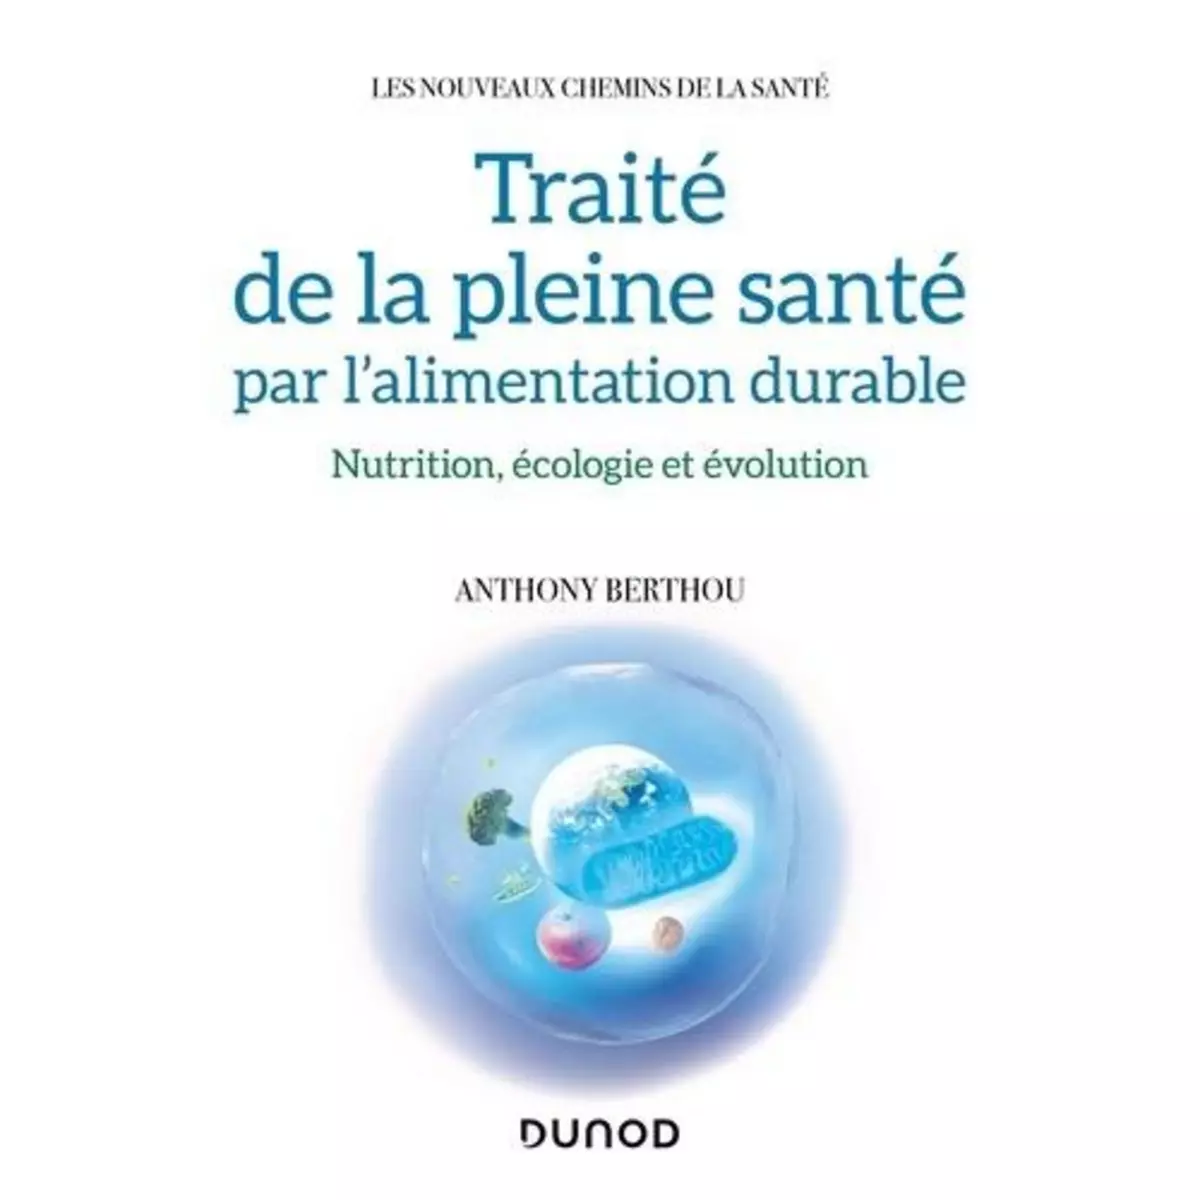  TRAITE DE LA PLEINE SANTE PAR L'ALIMENTATION DURABLE. NUTRITION, ECOLOGIE ET EVOLUTION, Berthou Anthony